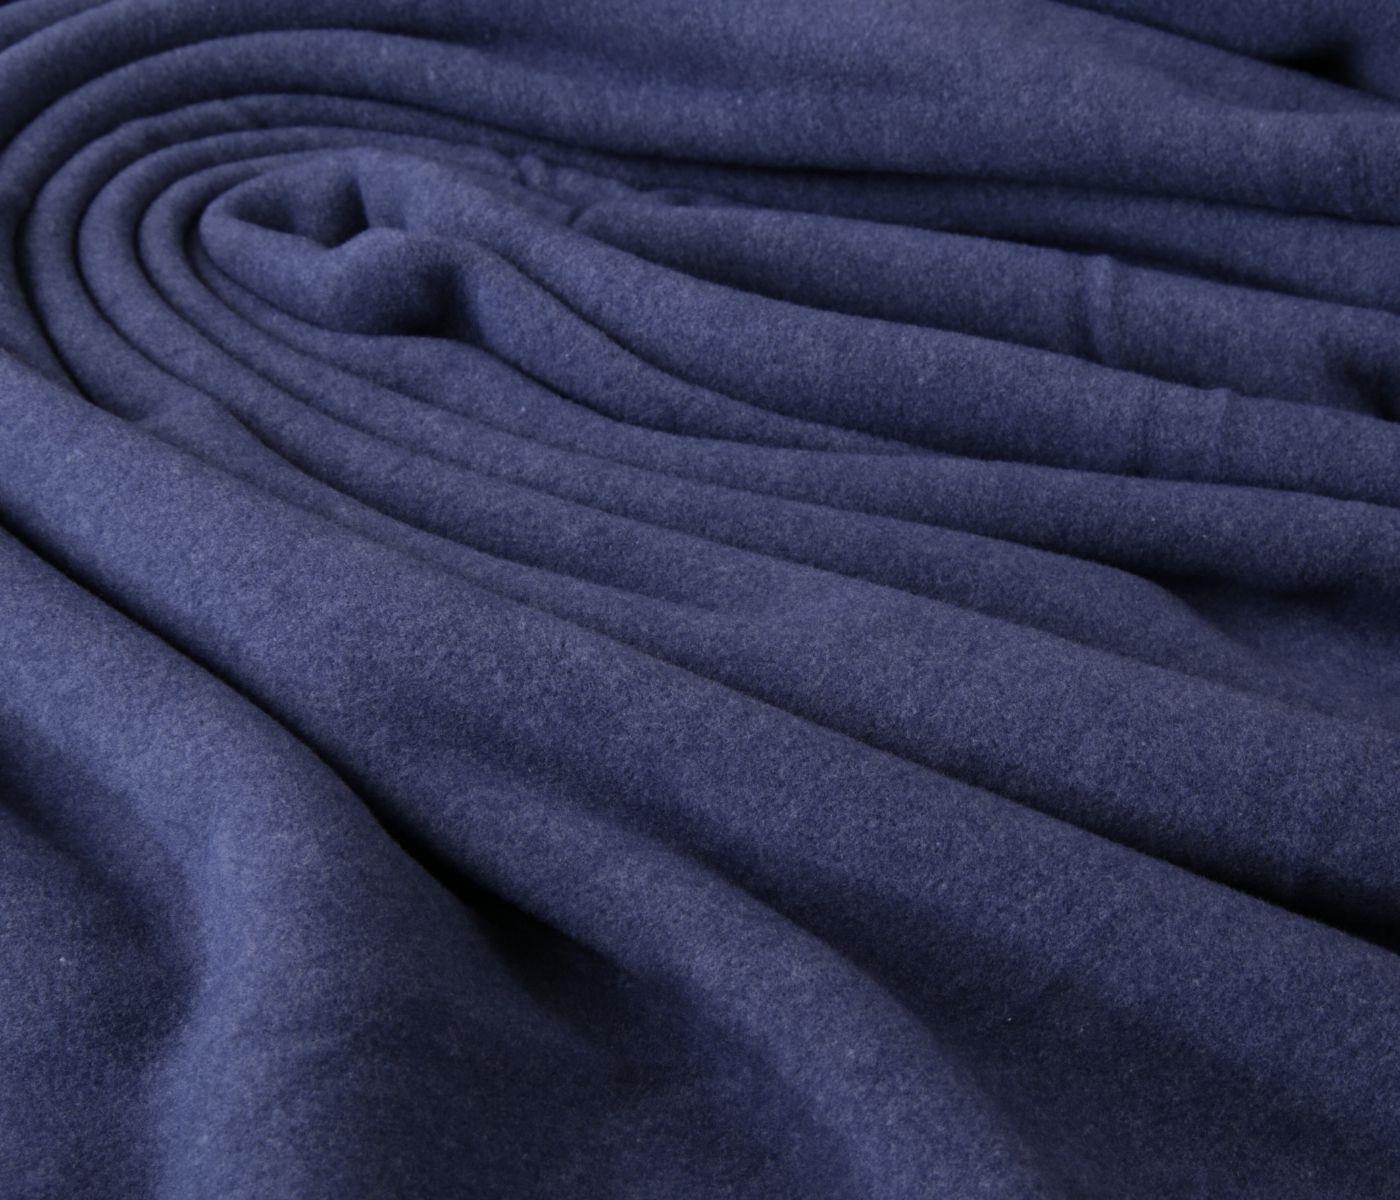 Blaue Fleecedecke (made in Germany) jetzt im Onlineshop kaufen! - Farbe:  dunkelblau | Tagesdecken